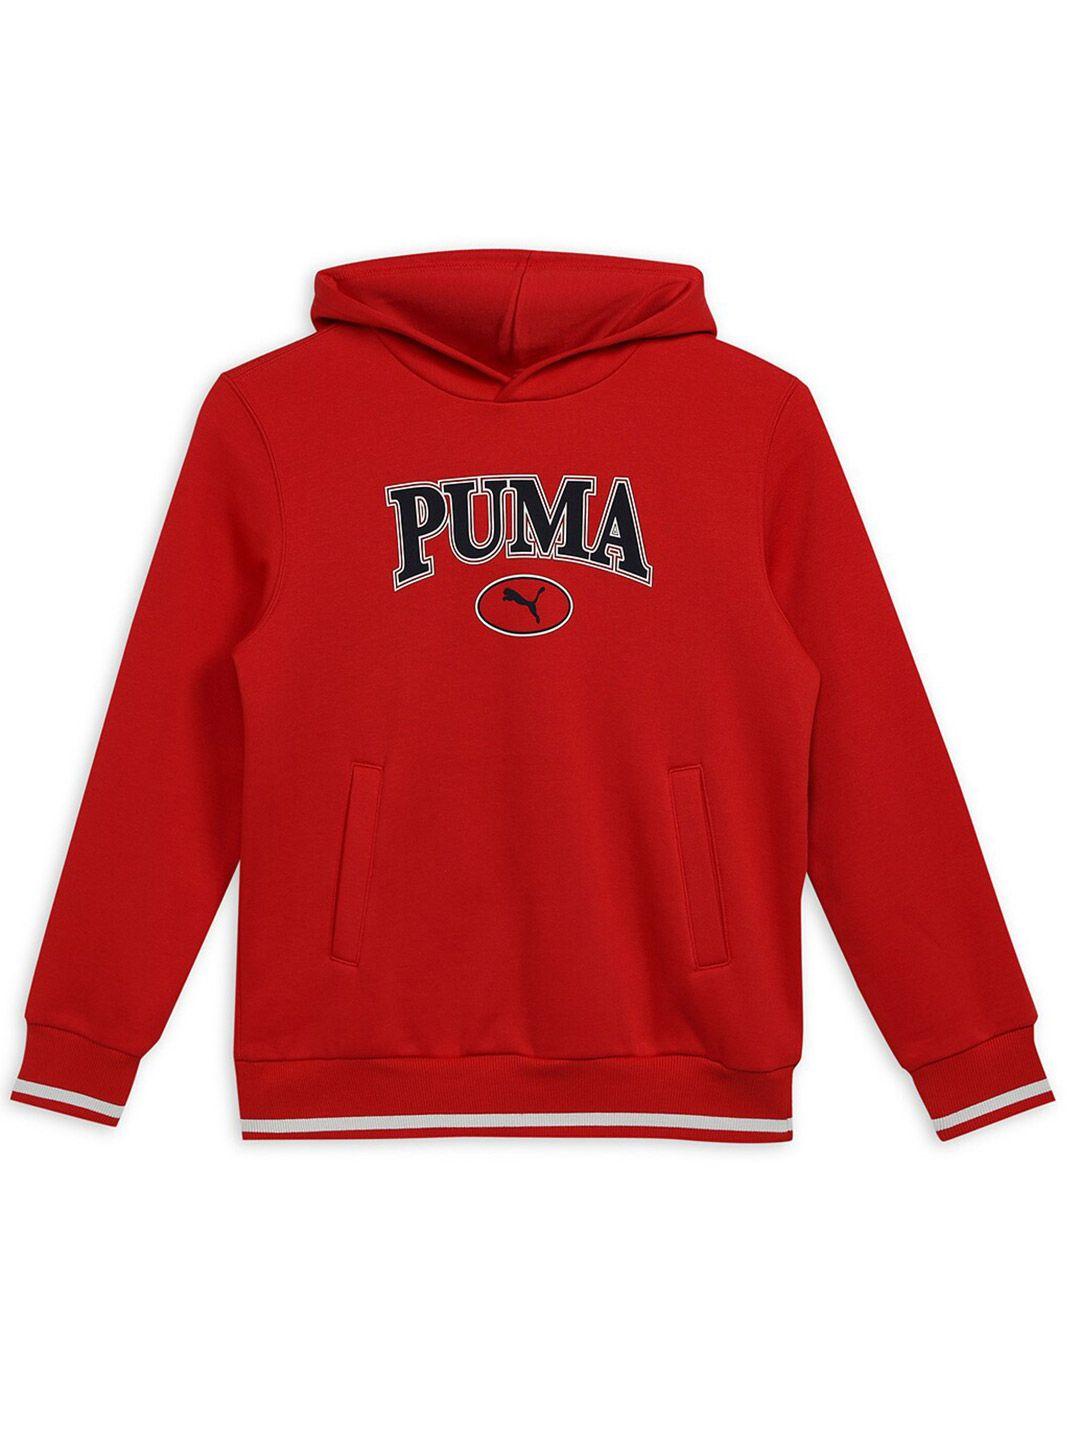 puma boys squad youth logo printed cotton hoodie